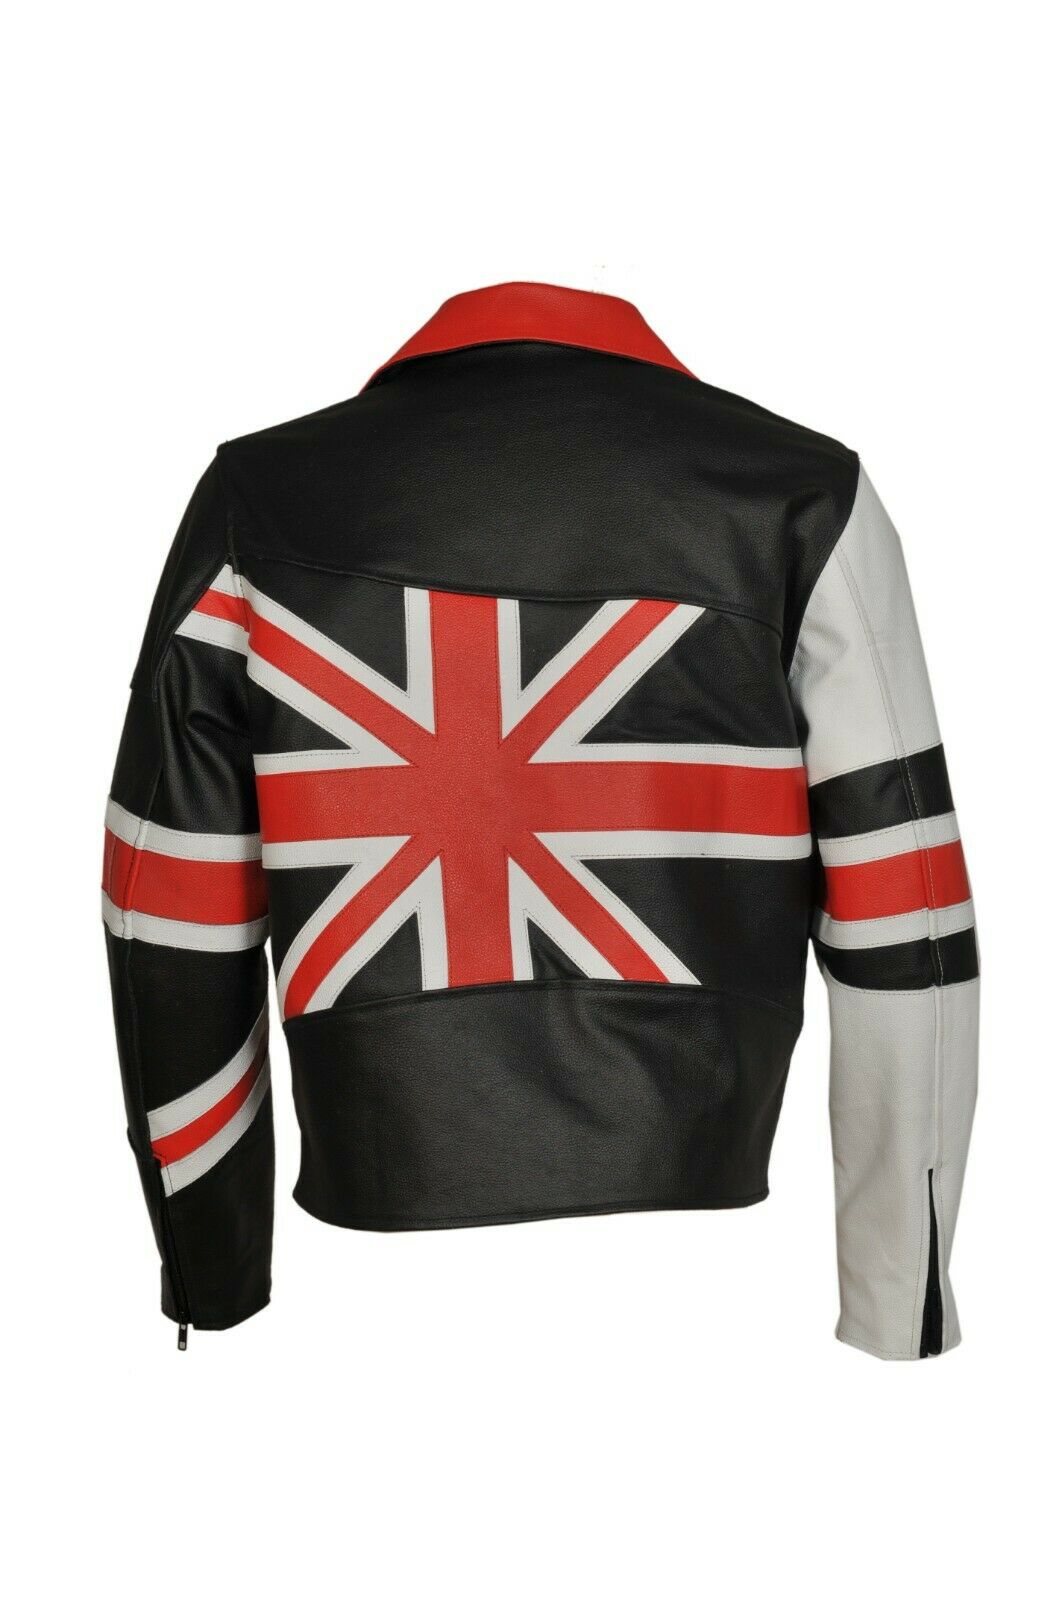 Men Leather Jacket amazing UK flag Style by M0trox